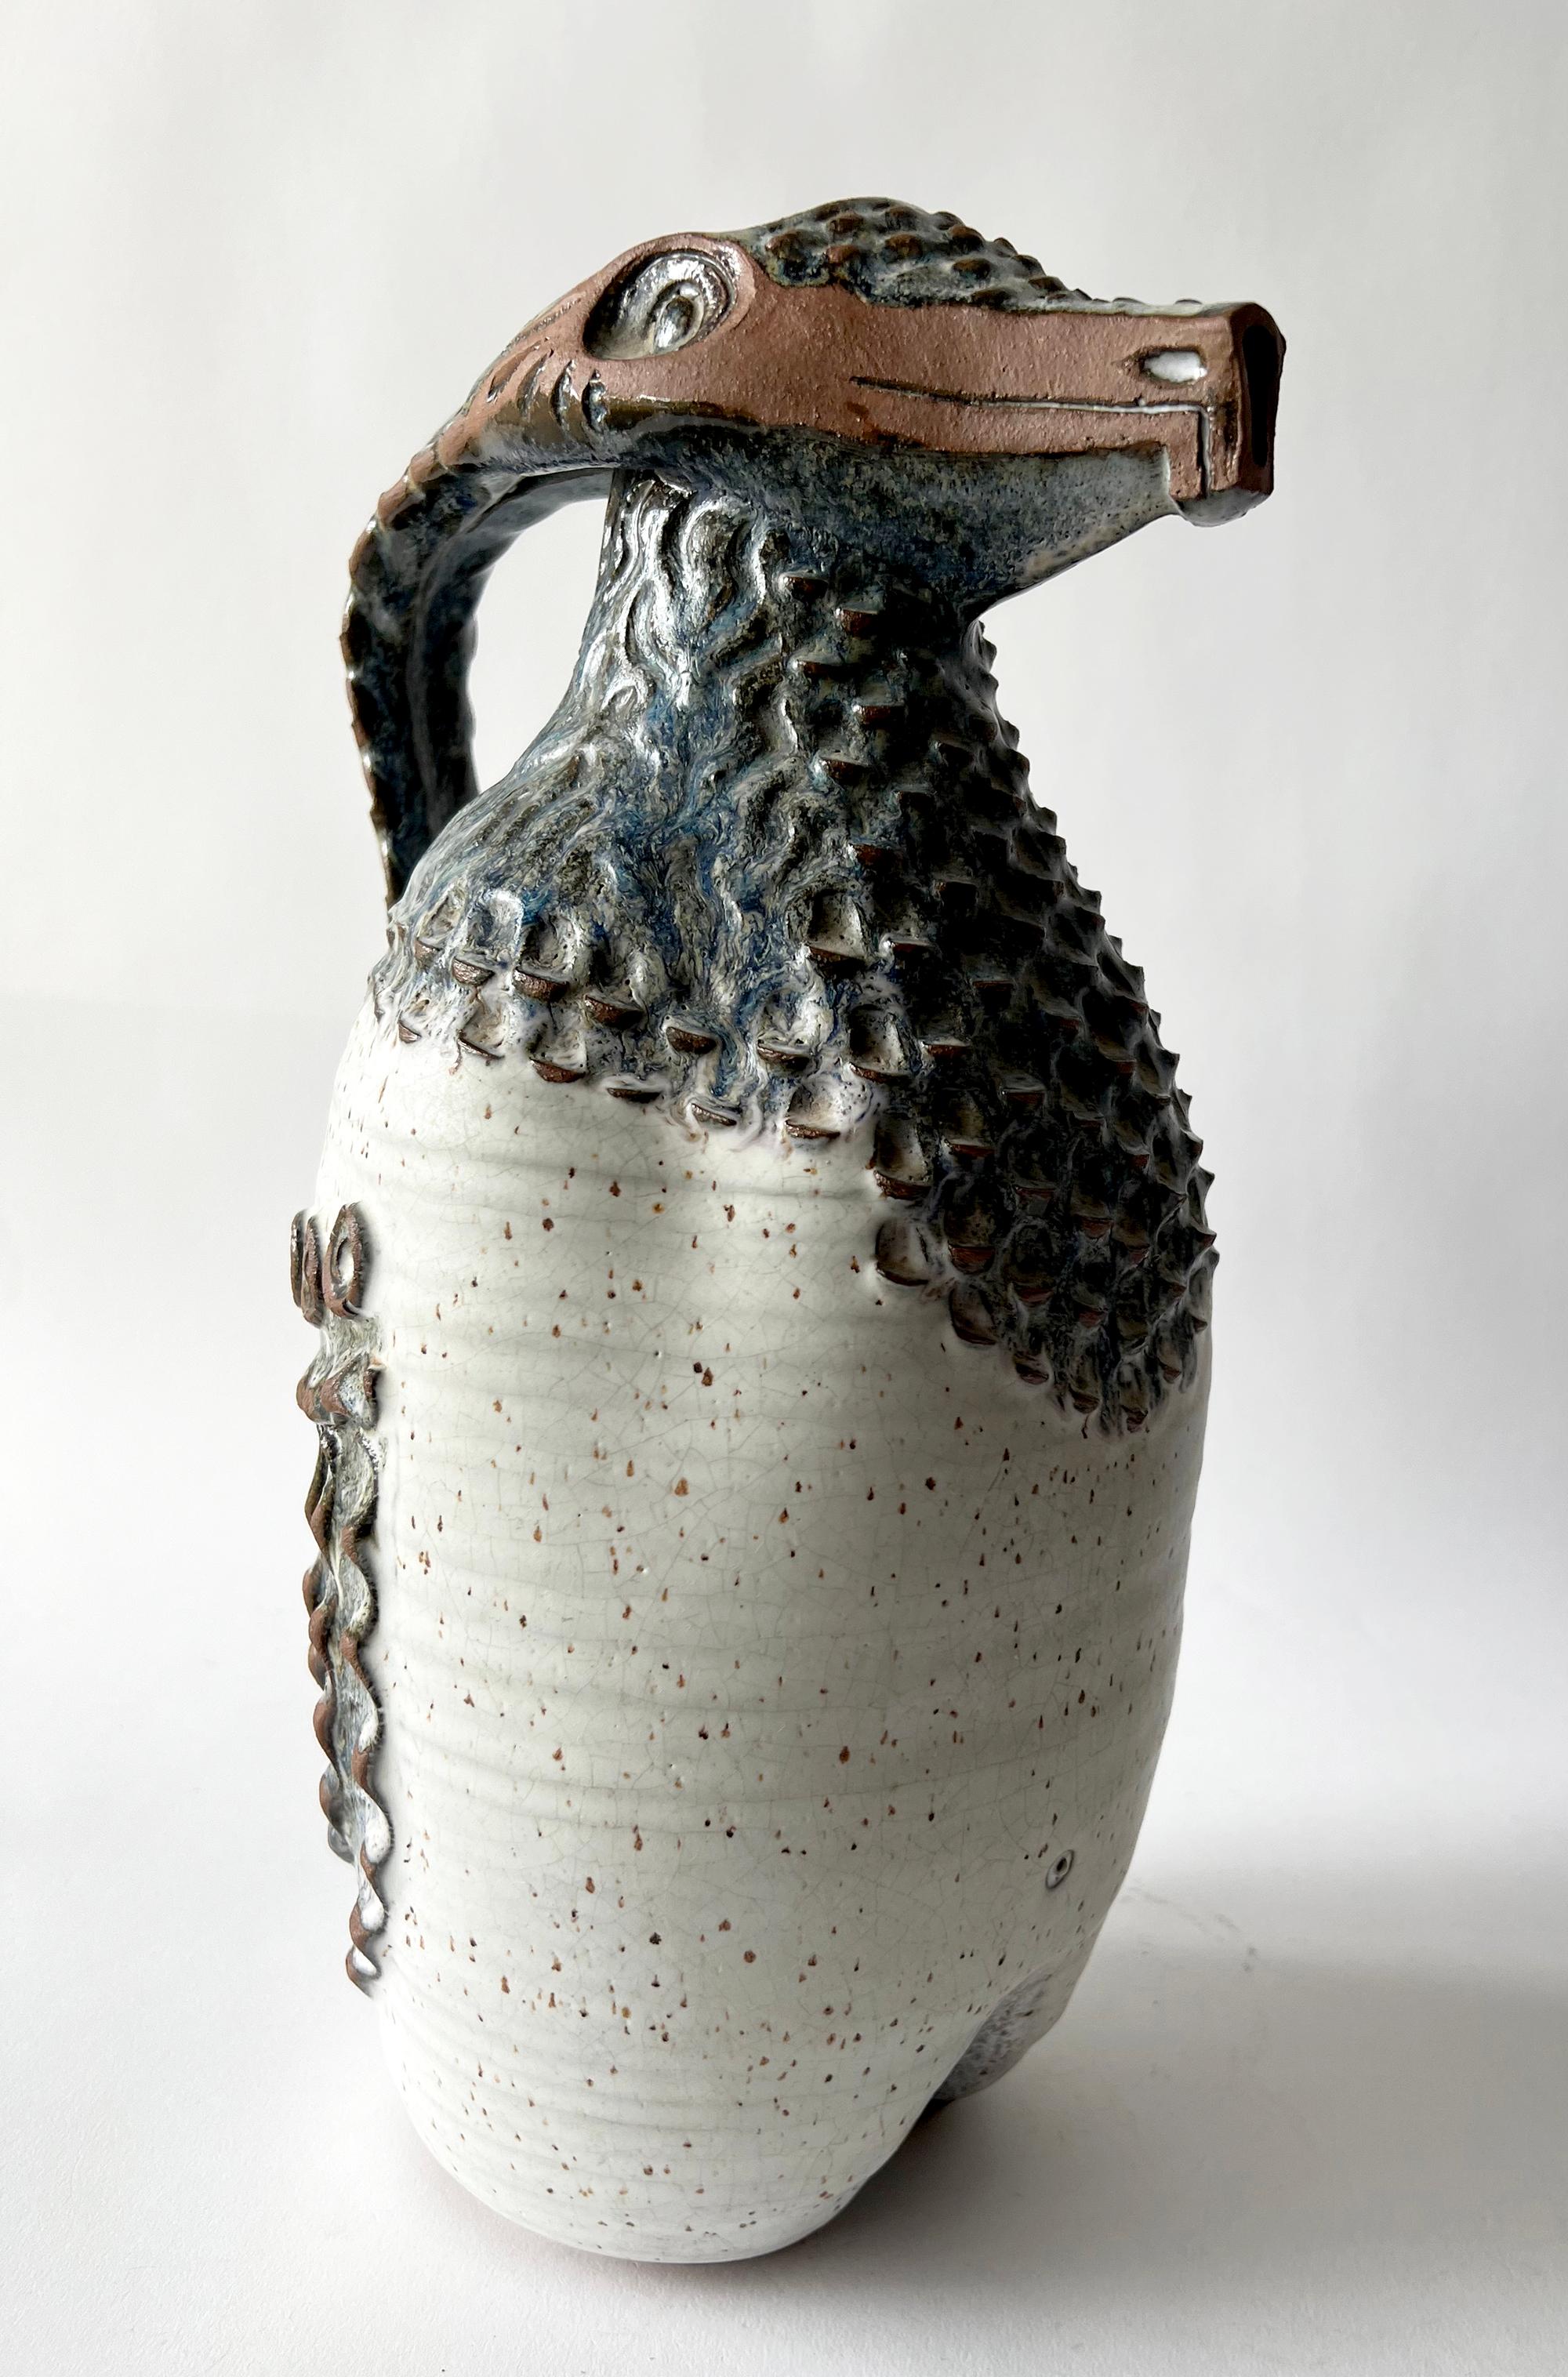 Keramikkrug aus Steinzeug mit Reptilienmotiven, geschaffen von Jack Mason aus Stone Mountain, Georgia. Die Kanne ist 14,5